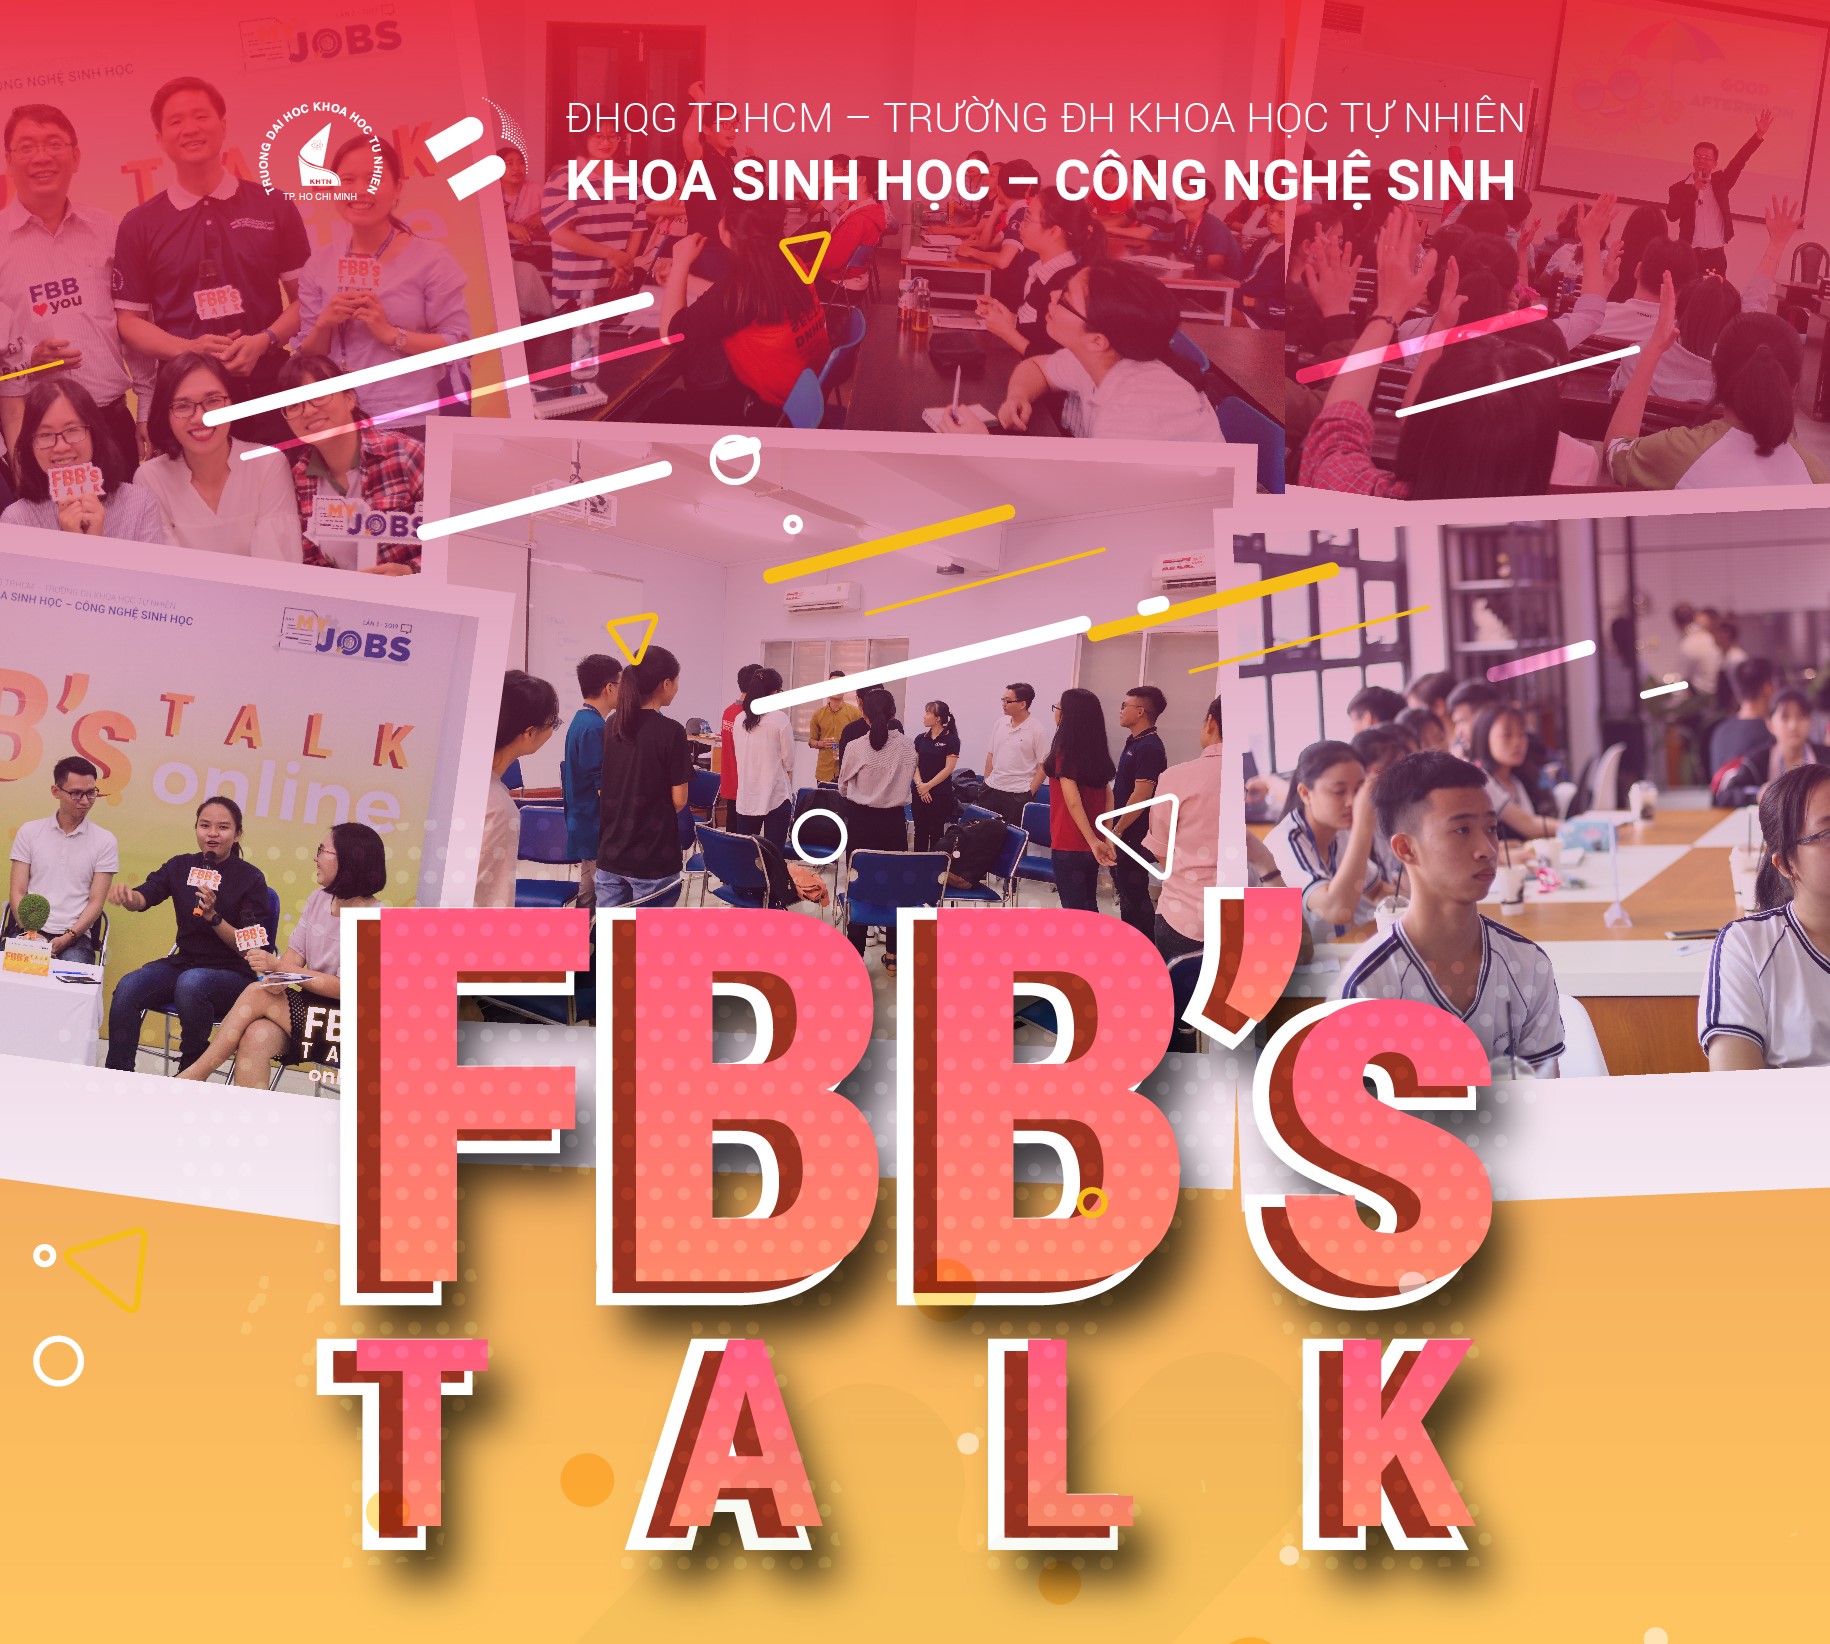 FBB's talk chủ đề Biến áp lực thành động lực